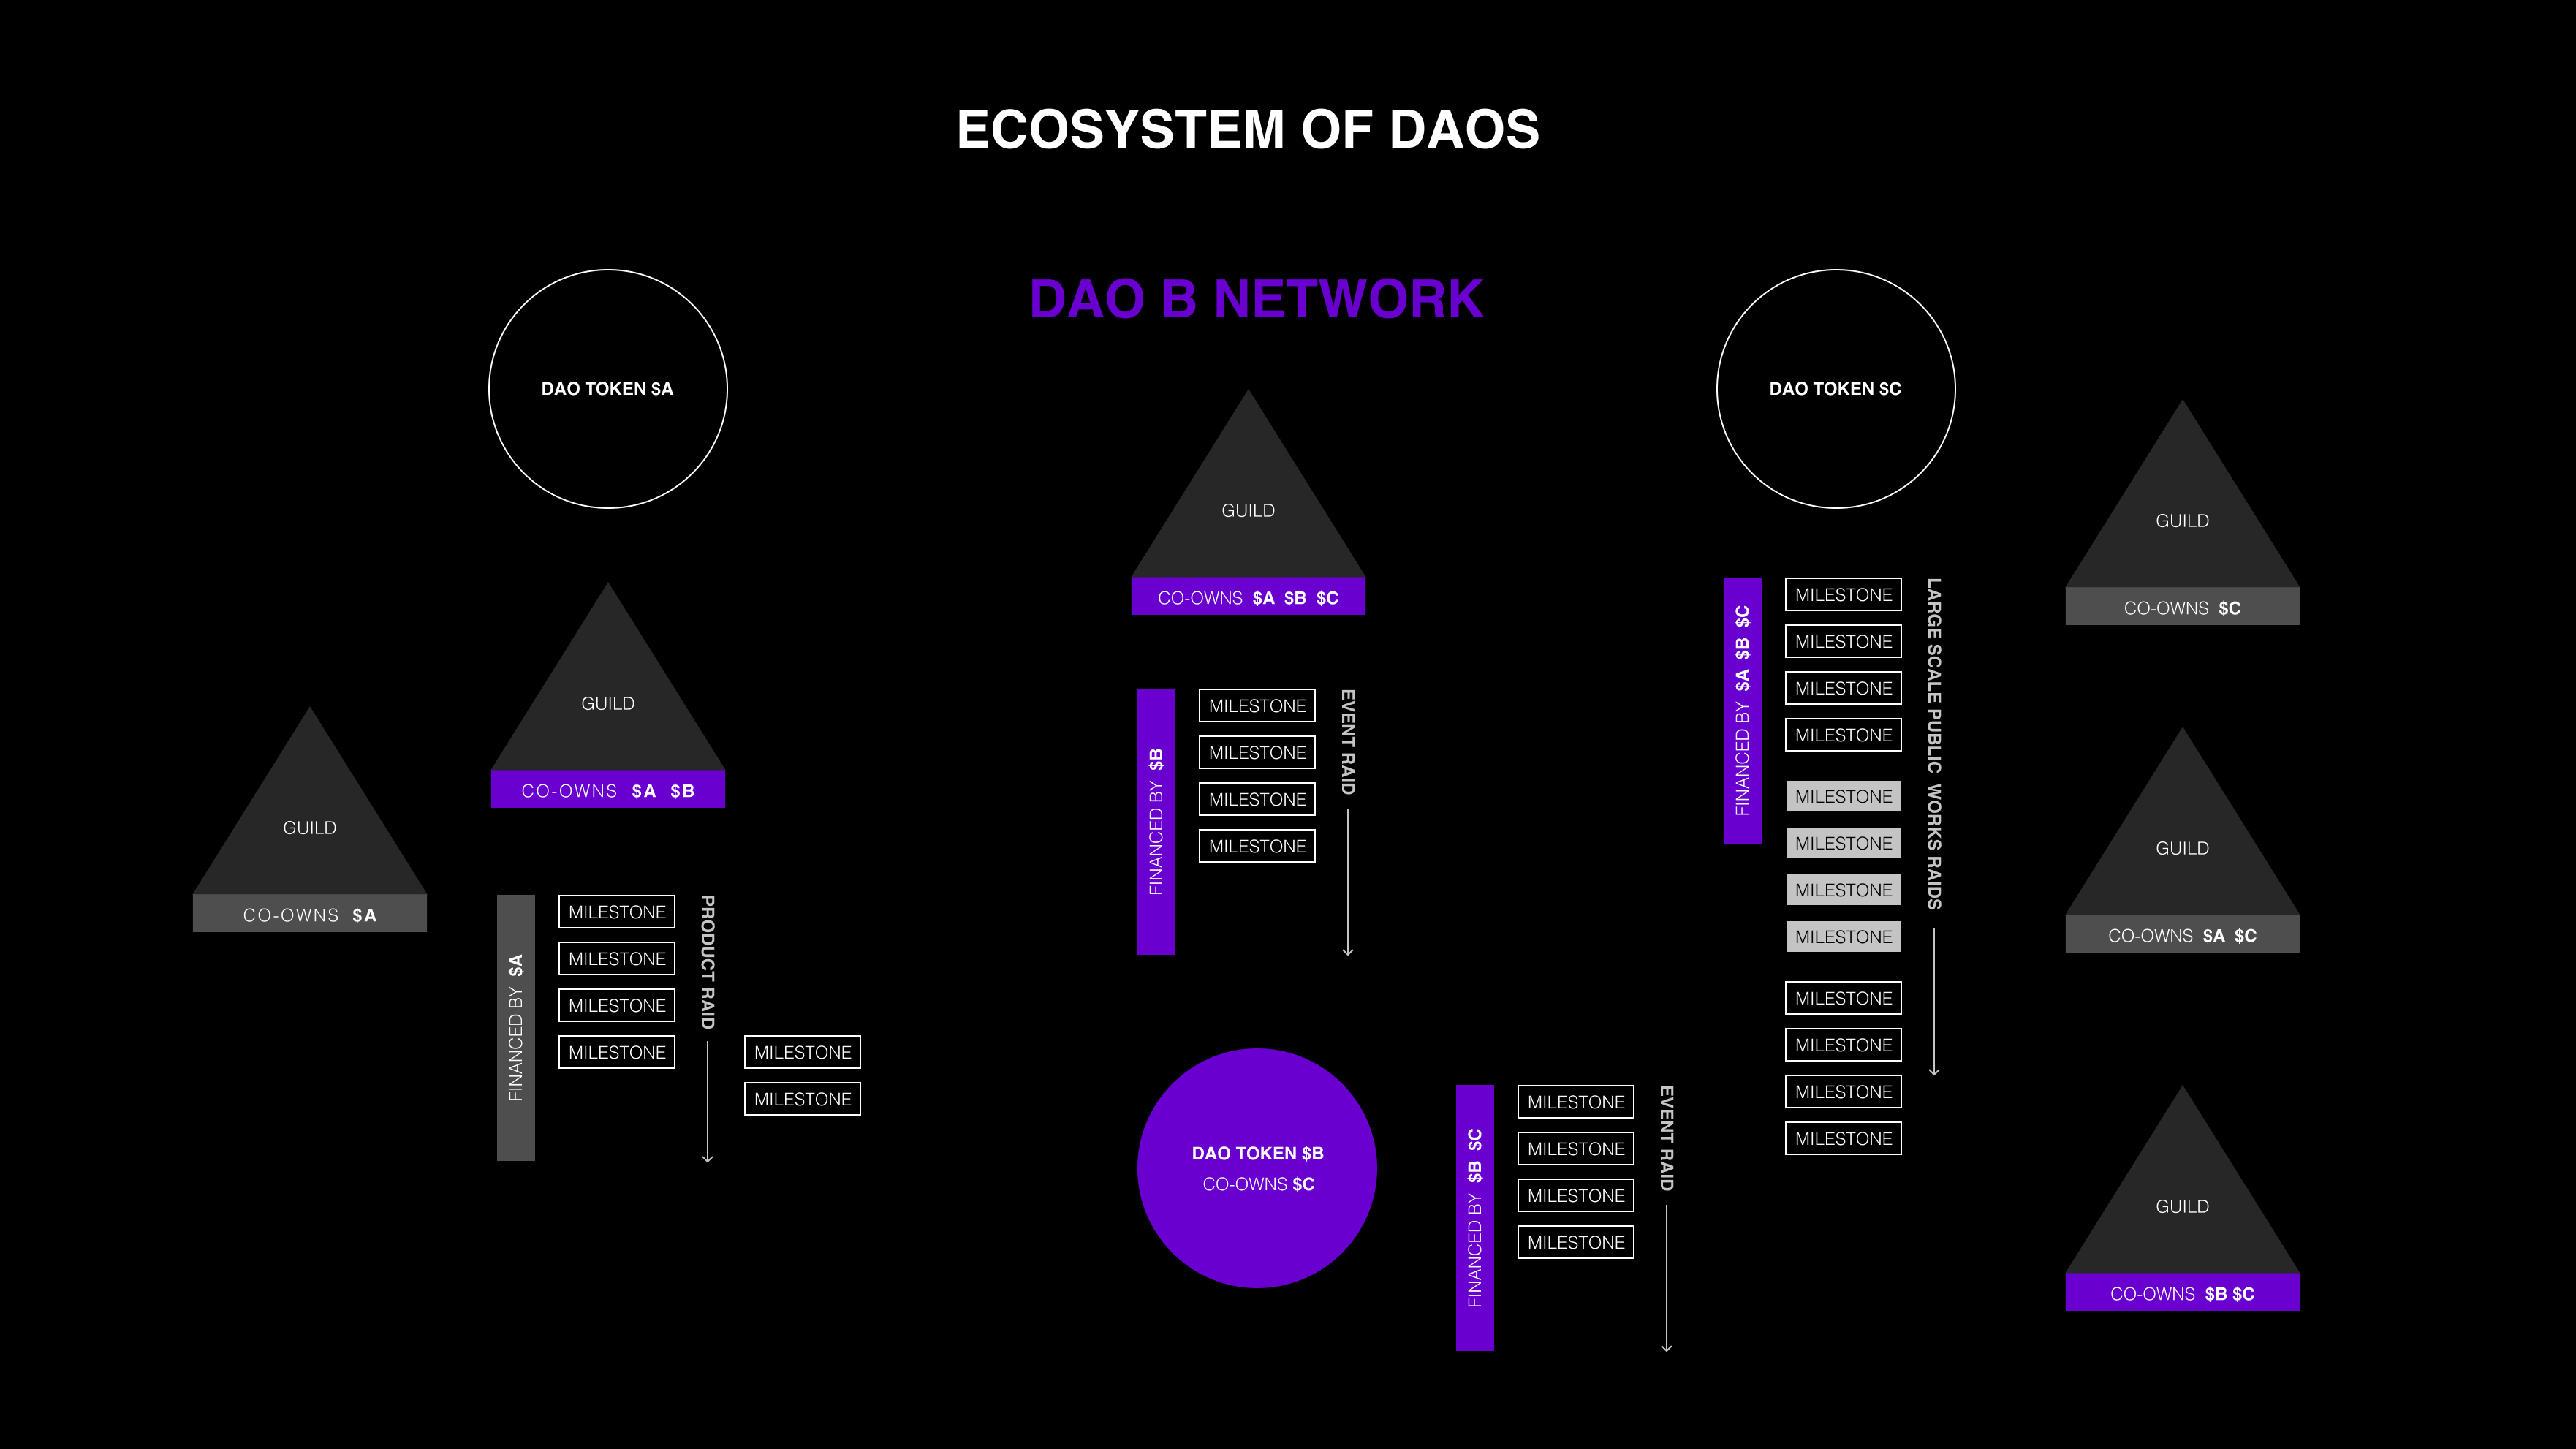 一个例子：在 DAO 中代币，小队和任务在 DAO 的不同网络中被分配，这些都可以通过多种方式排名或分类。